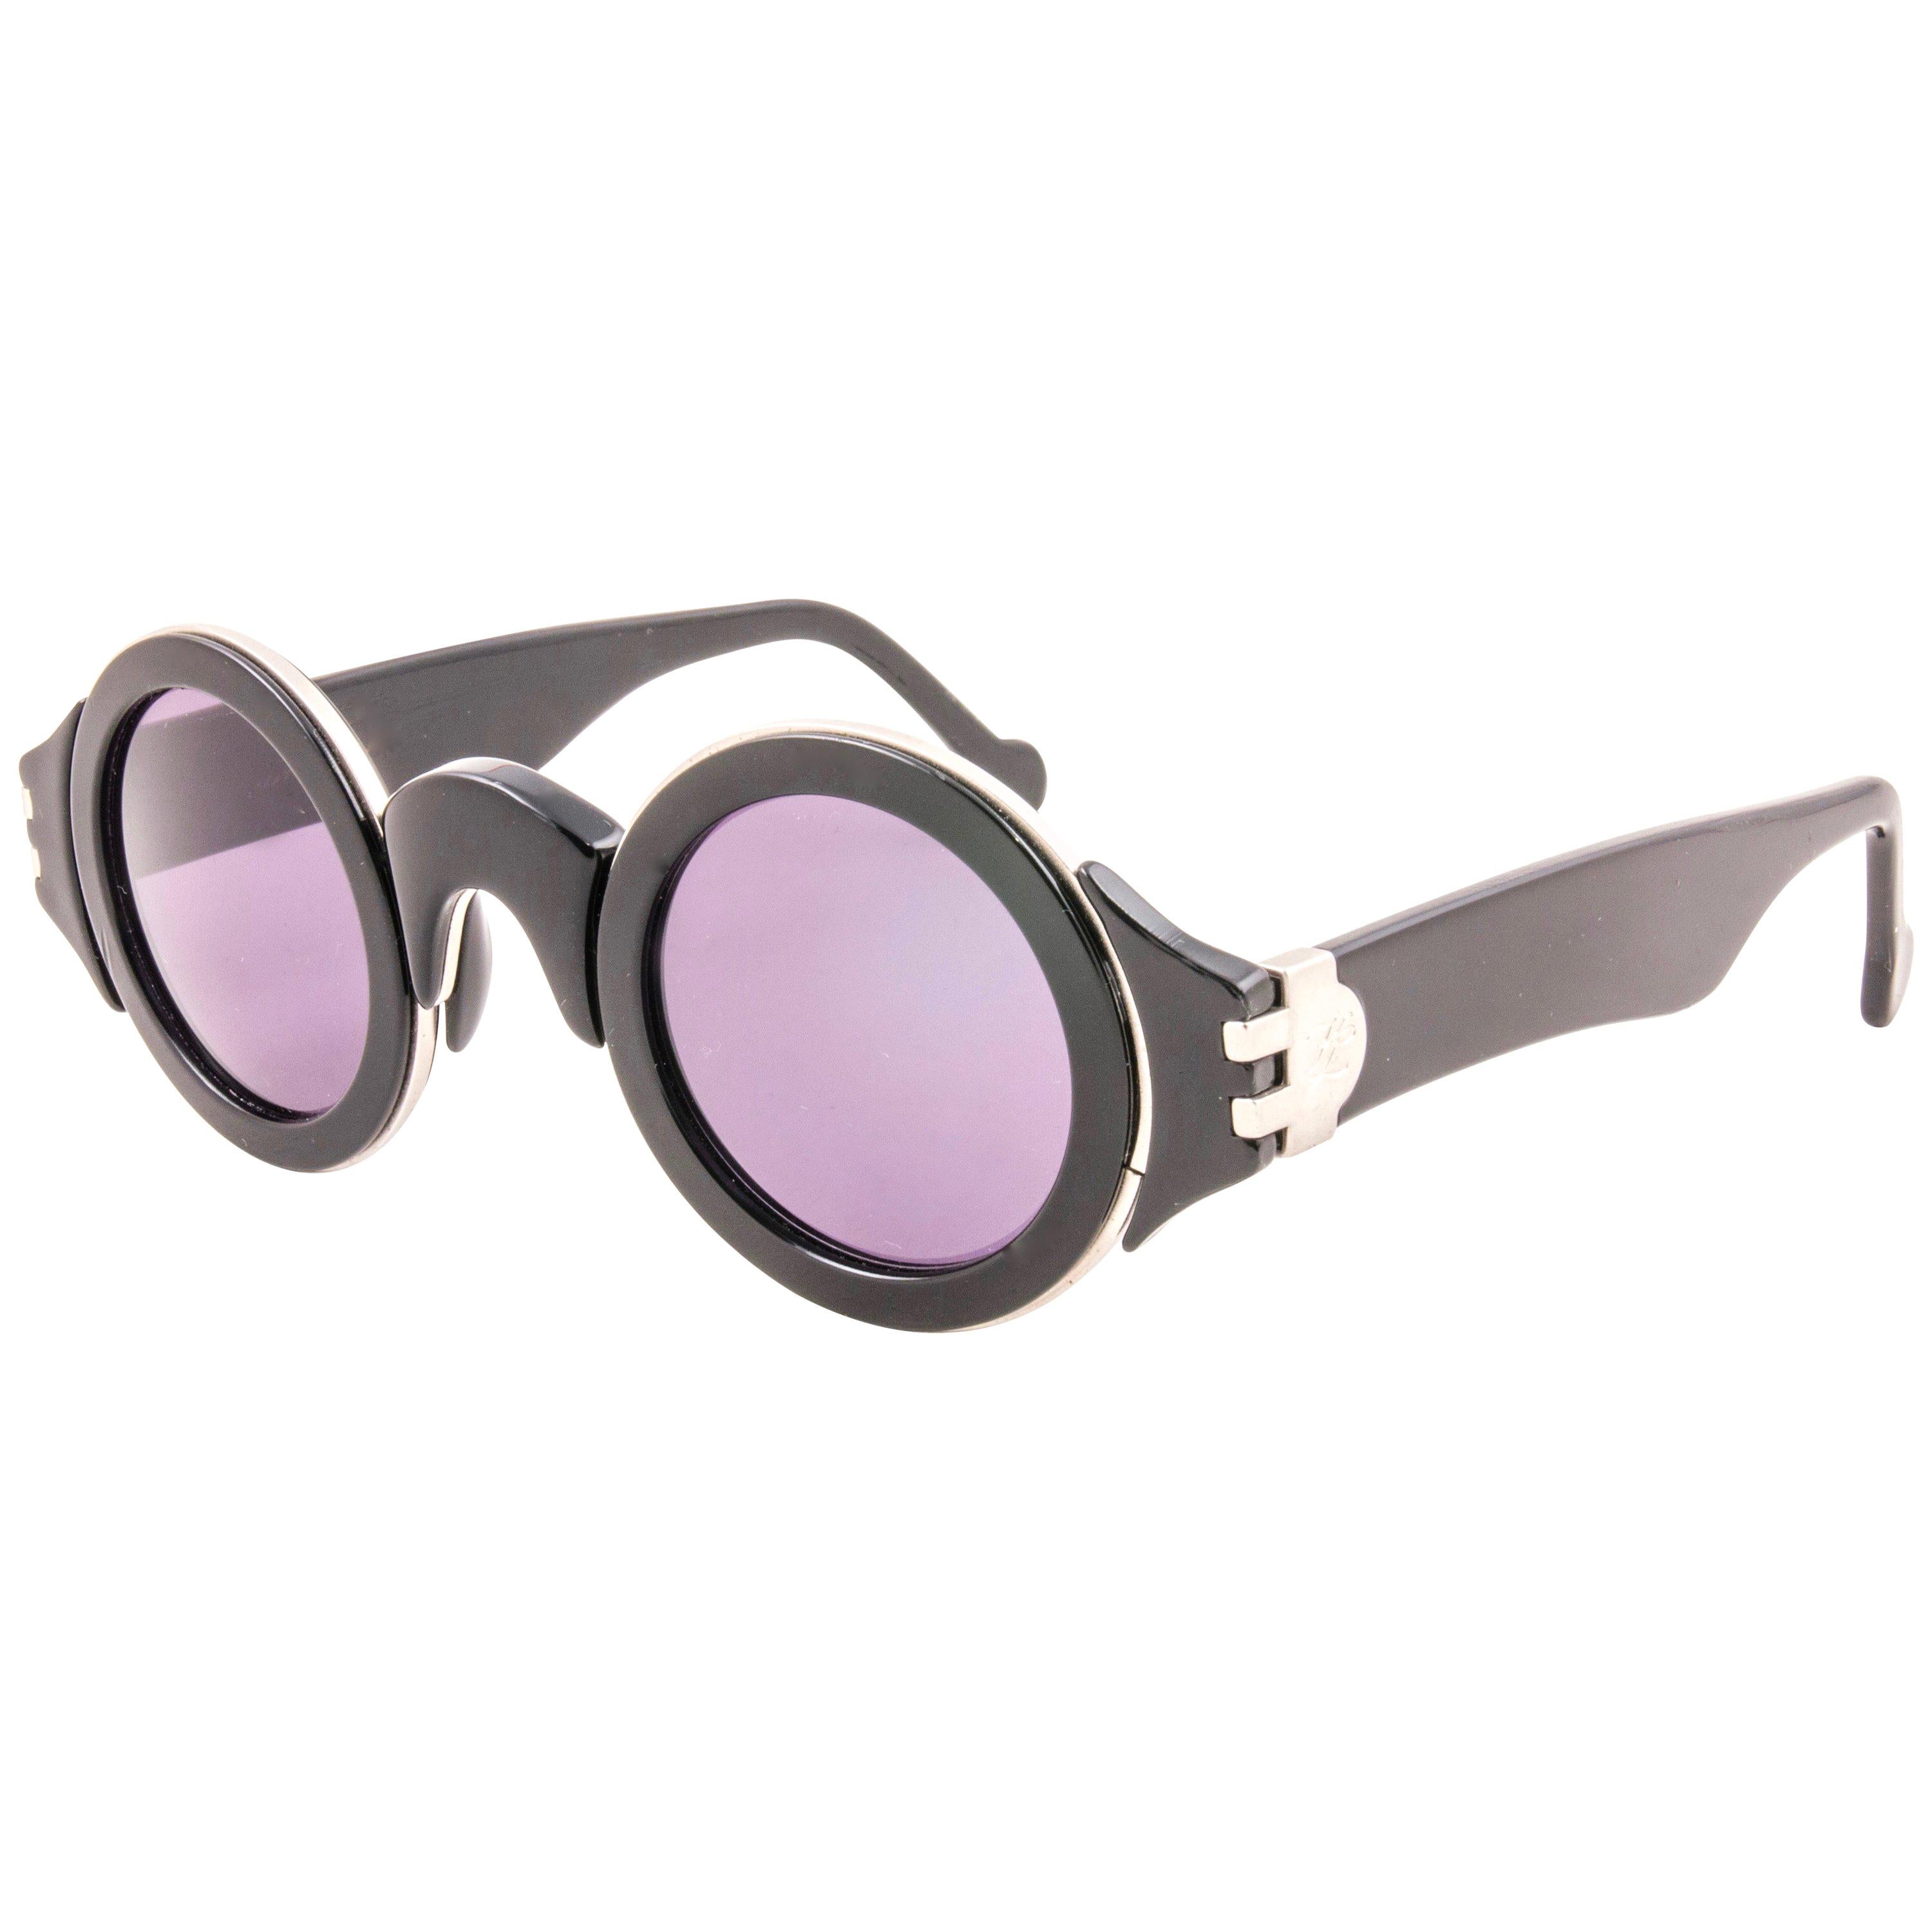 Magnifique paire de lunettes de soleil Karl Lagerfeld 117 Round black & silver inserts avec une paire de verres gris impeccables.   

Cette paire de Karl Lagerfeld vintage est une pièce rare et recherchée à ne pas manquer !

Veuillez noter que cet